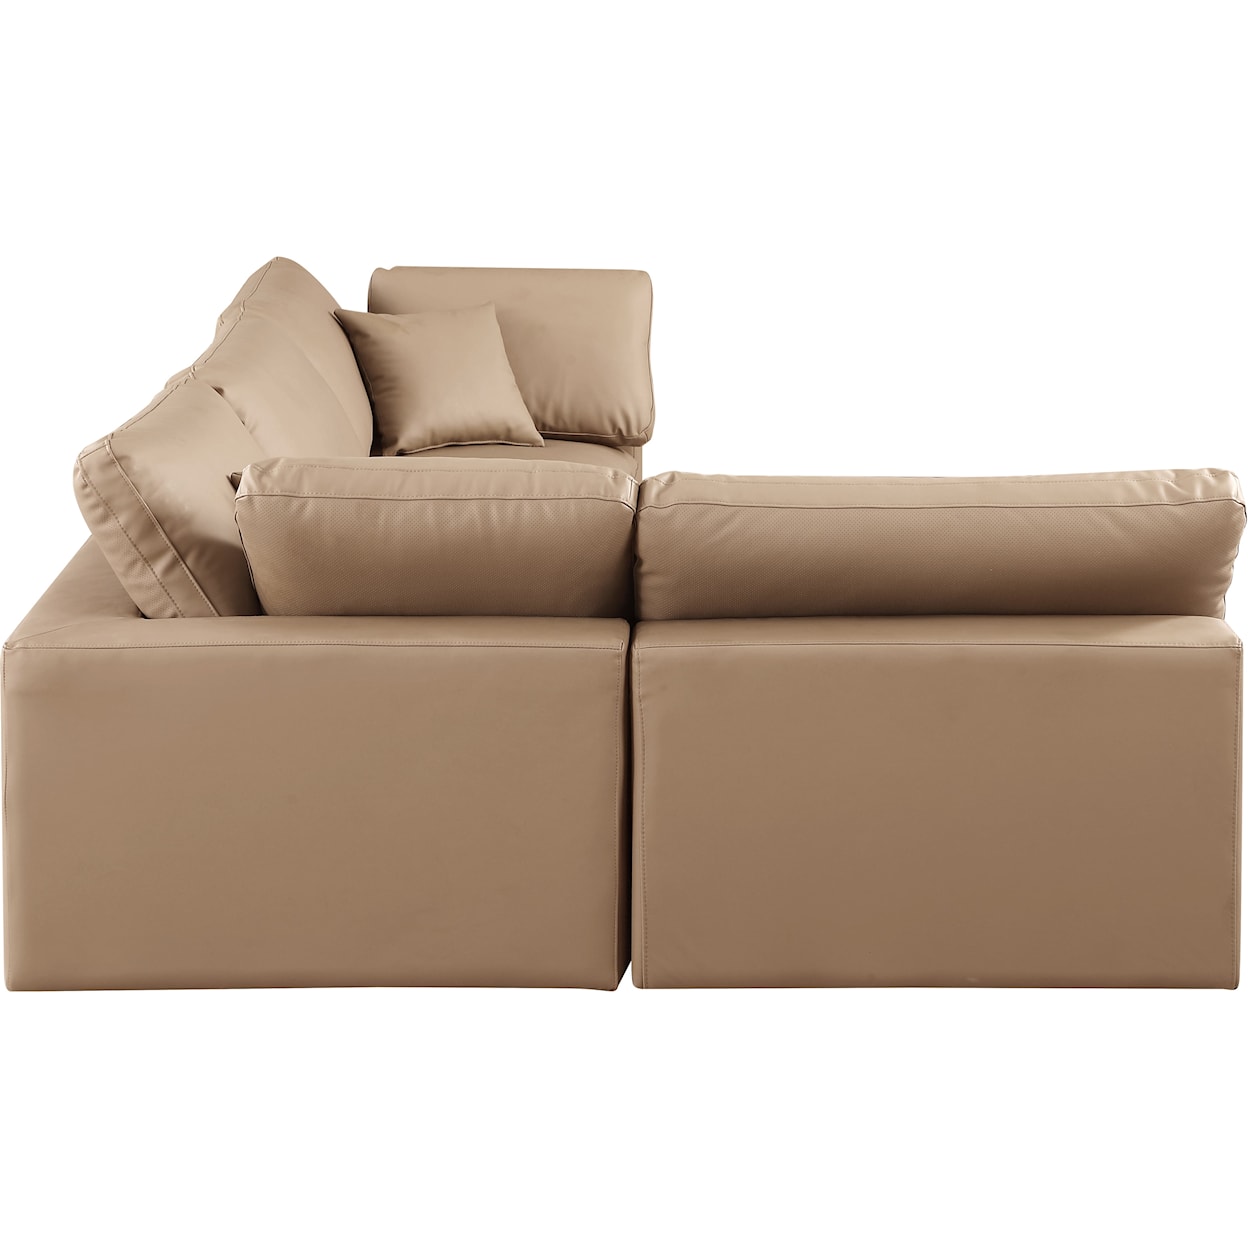 Meridian Furniture Comfy Modular Sectional